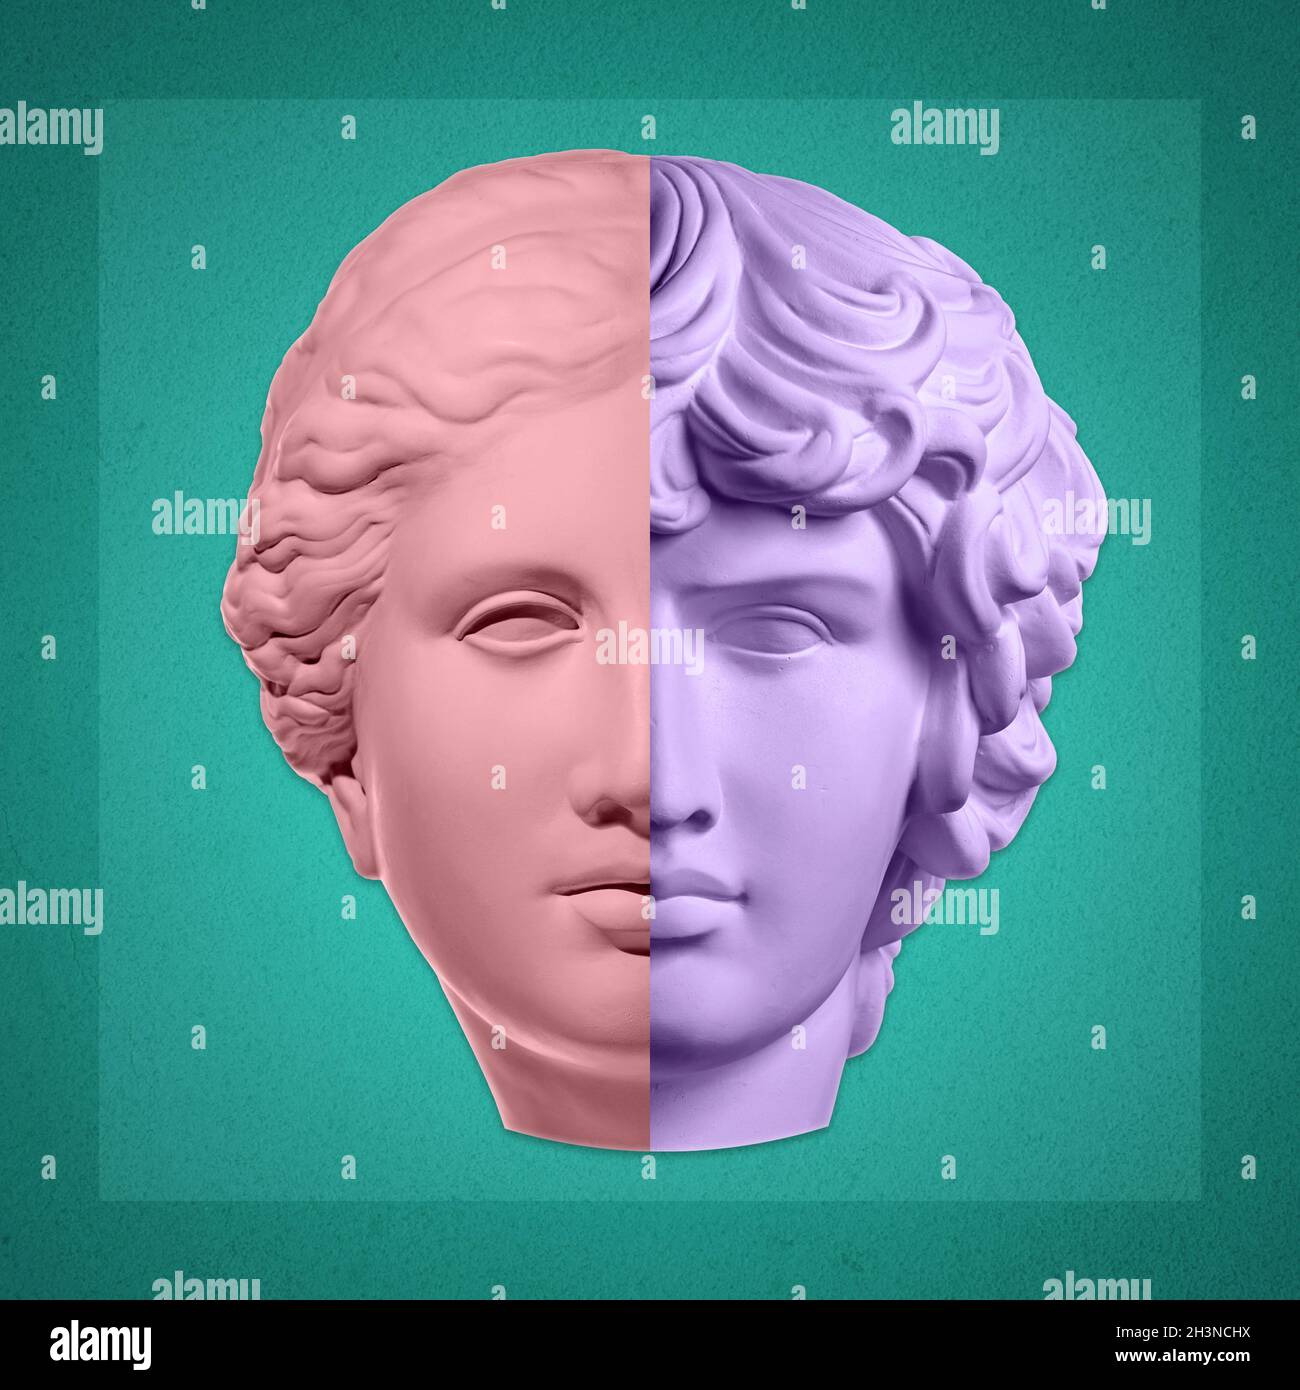 Collage mit Gips antike Skulptur von duble menschlichen Gesicht in Pop-Art-Stil. Kreatives Konzept Bild mit alten Statue Kopf in Stockfoto